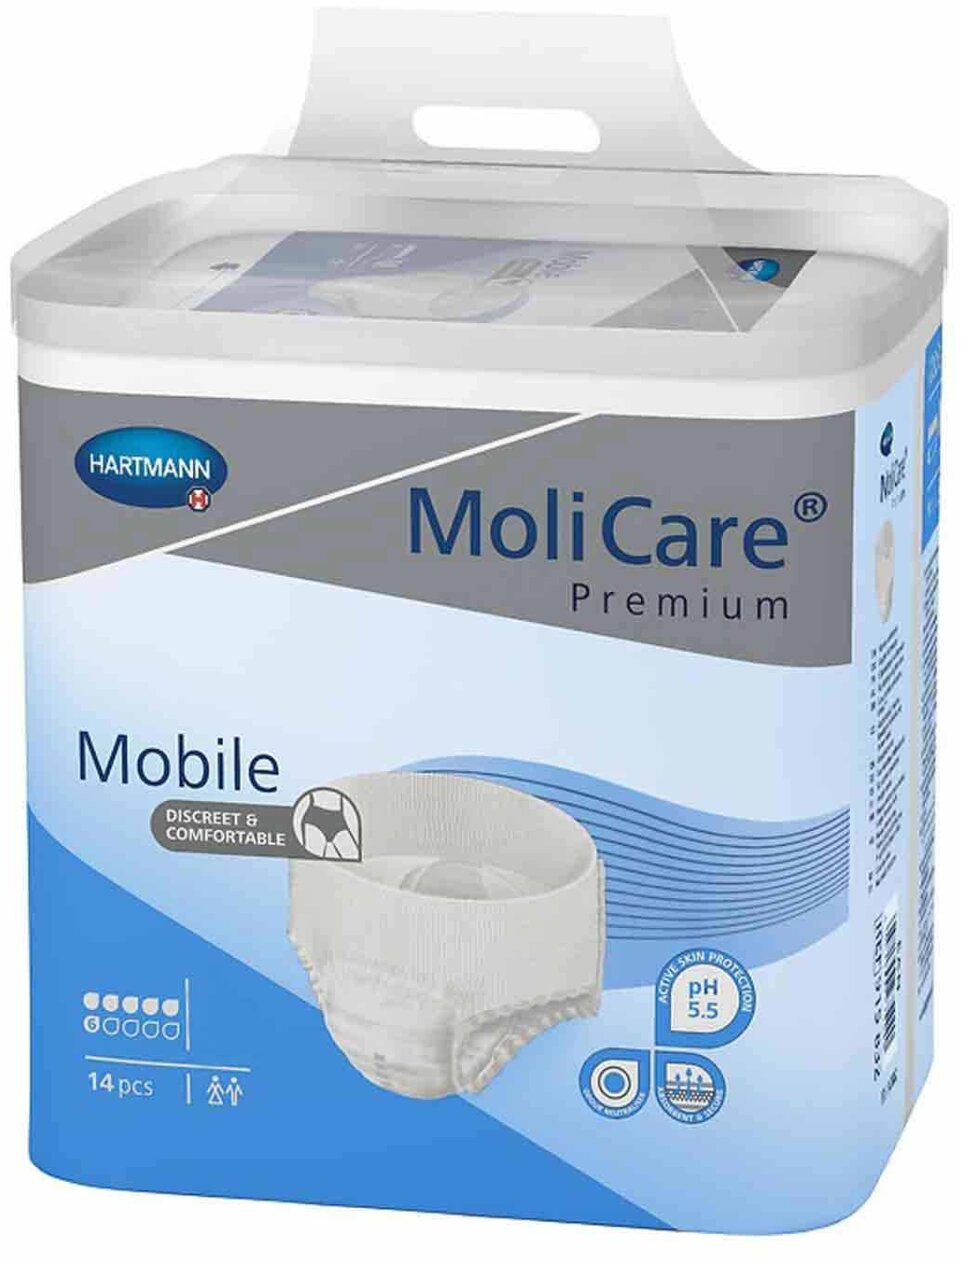 MoliCare Premium Mobile 6 Tropfen S, 56 Stück